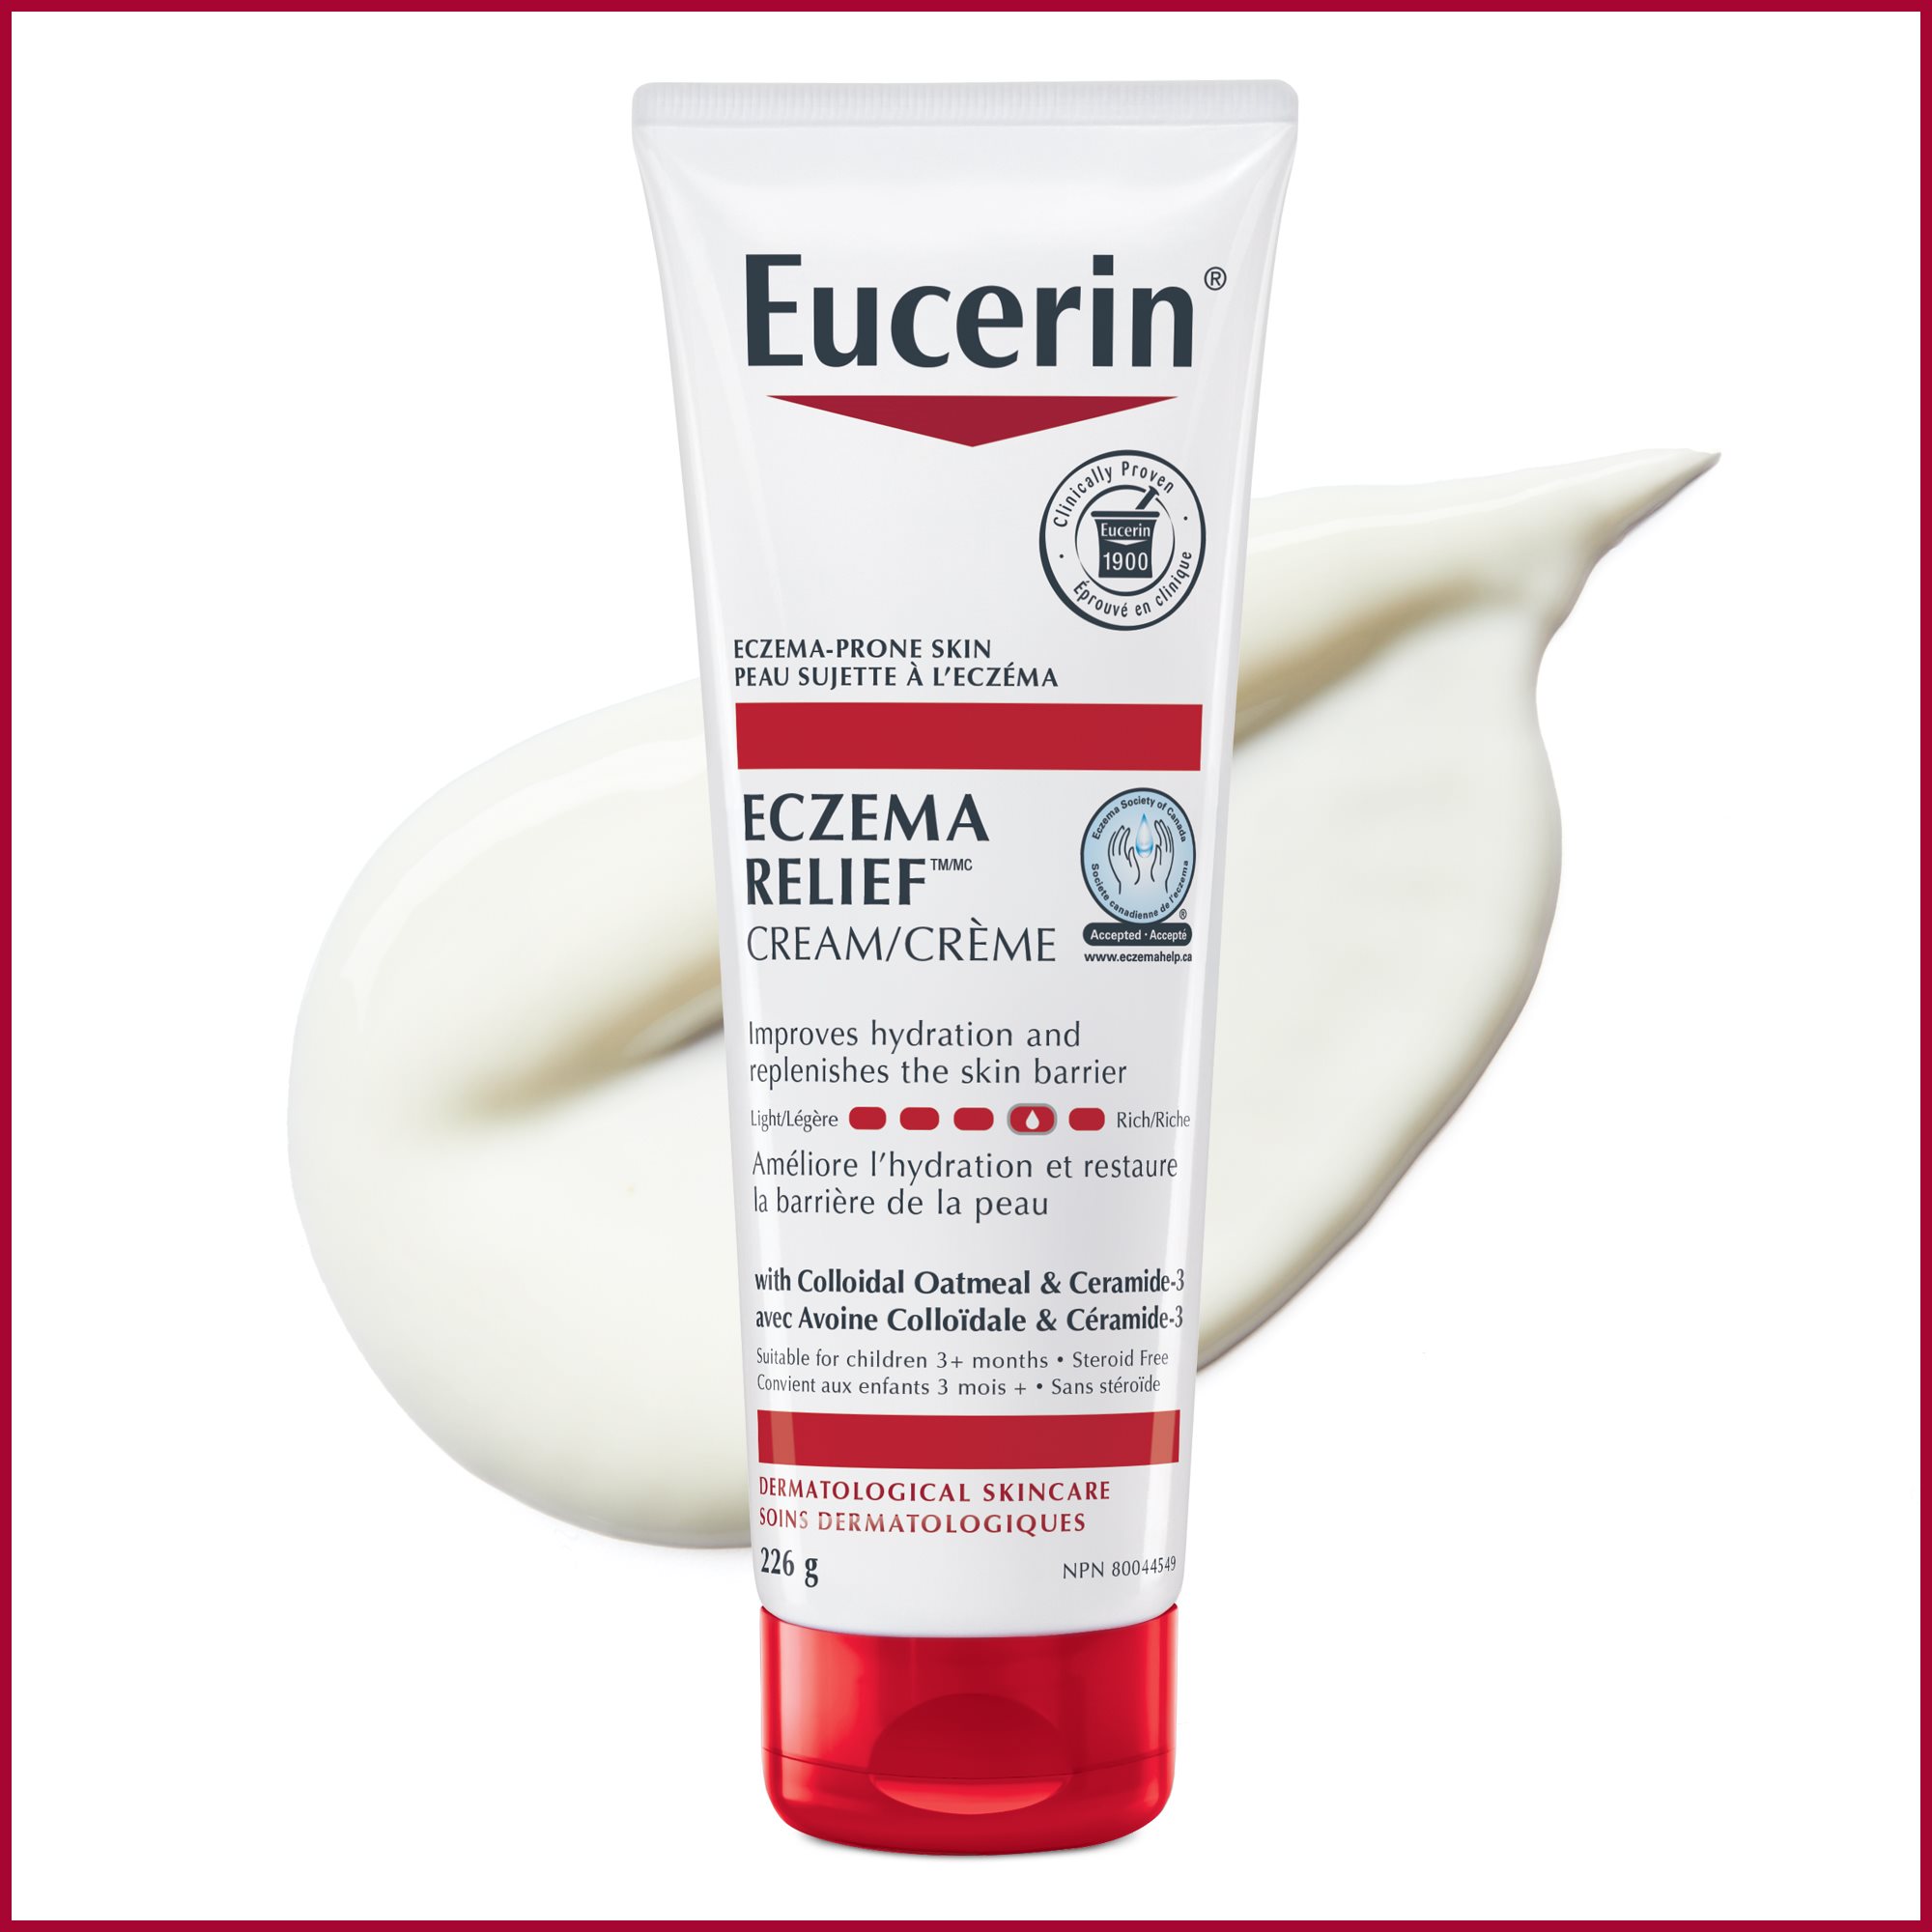 Bouteille de crème Eucerin 226g pour peau sujette à l'eczéma avec traînée du produit derrière, sur fond blanc.